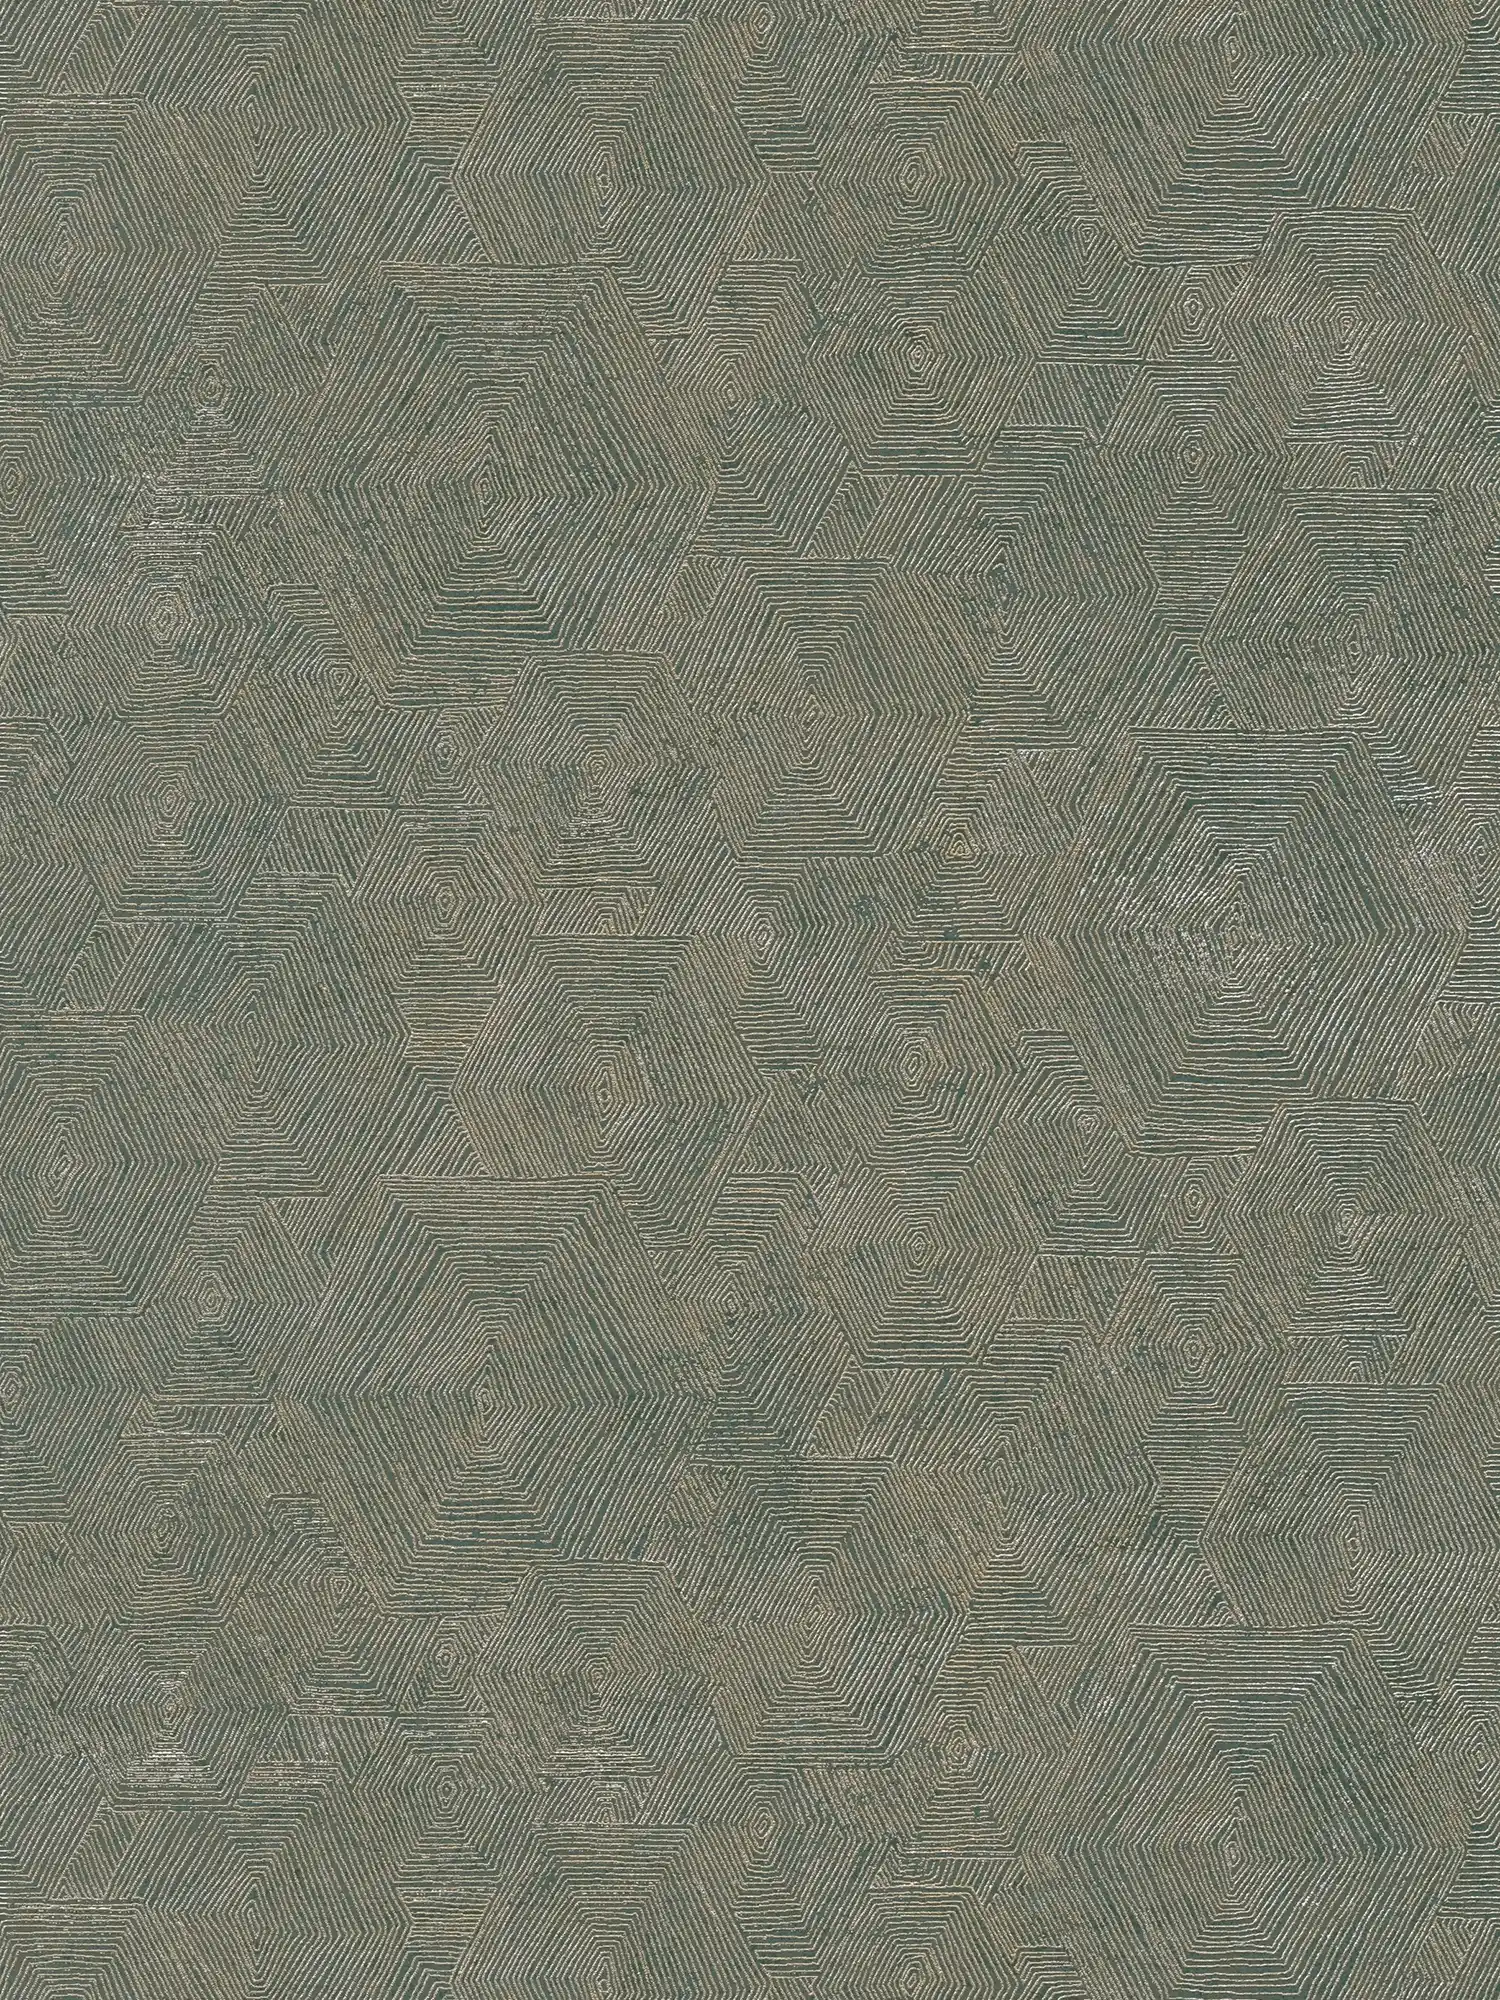 Melierte Tapete mit Grafik Struktur im Ethno Look – Metallic, Grün
